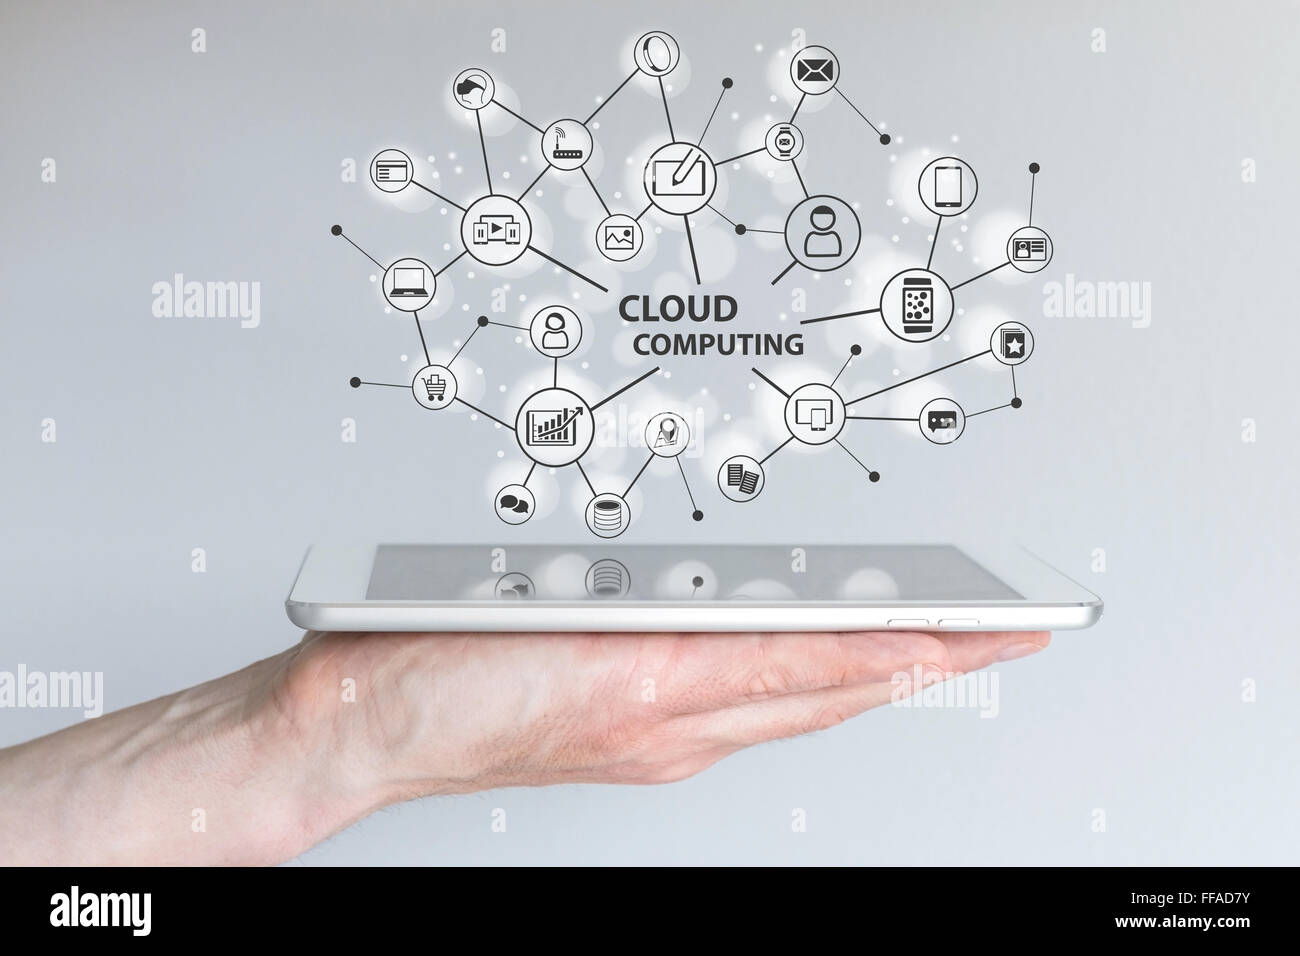 Le cloud computing et l'informatique mobile concept. Main tenant une tablette ou un téléphone intelligent. Réseau cloud d'appareils connectés Banque D'Images